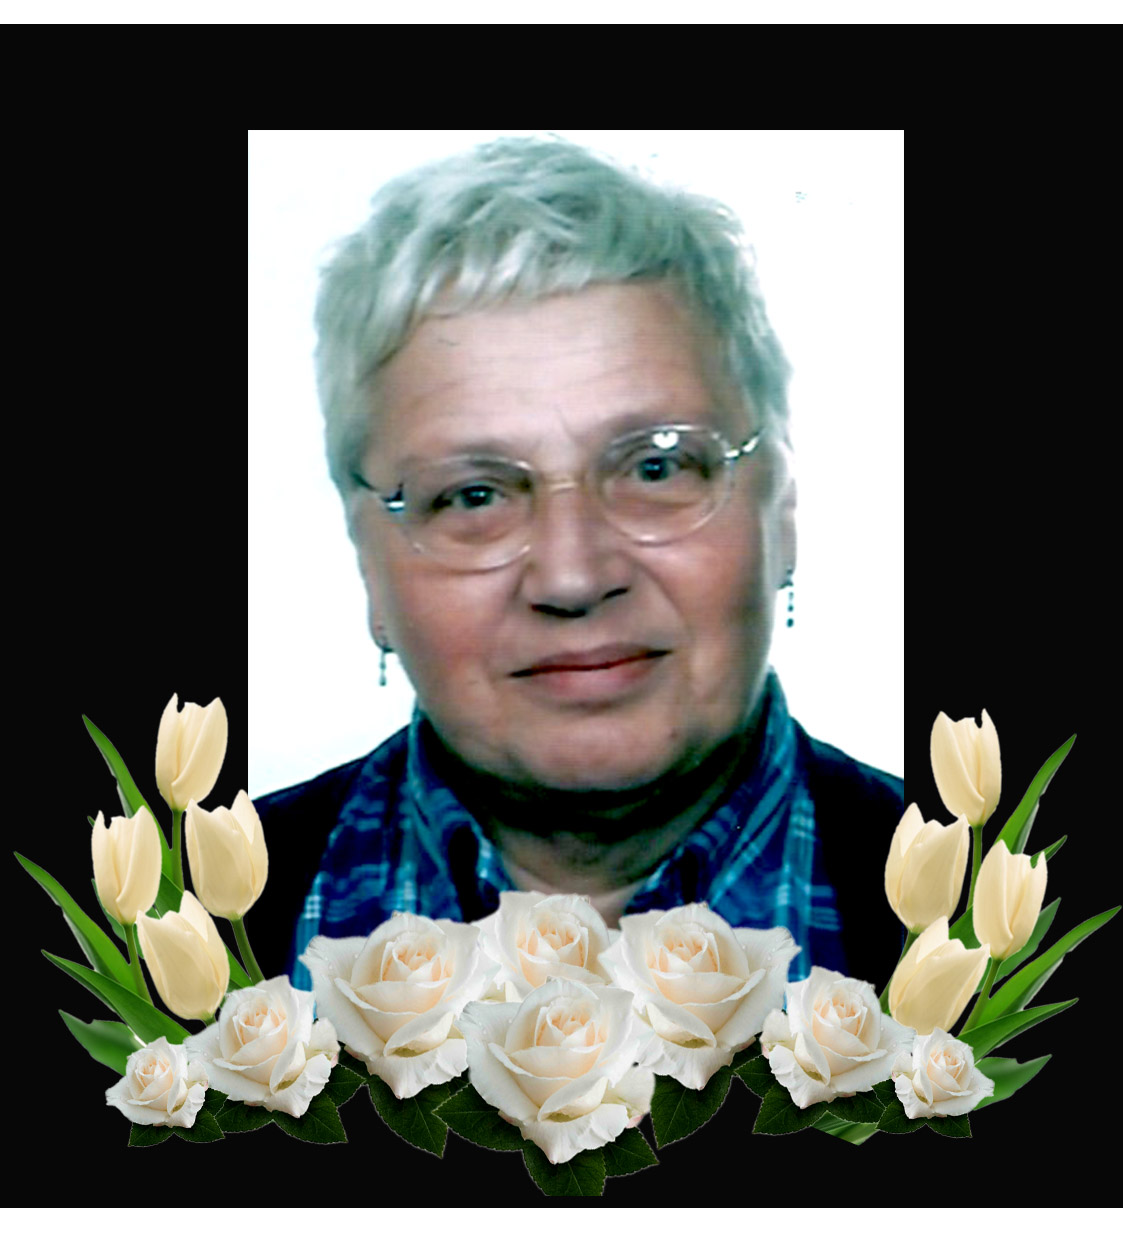 Op 12-02-2018 overleed onze geliefde eerste Voorzitter van de Stichting tot Steun aan de Dr. Reijntjesdovenschool in Sri Lanka, Mevrouw Barbel Kattenbelt